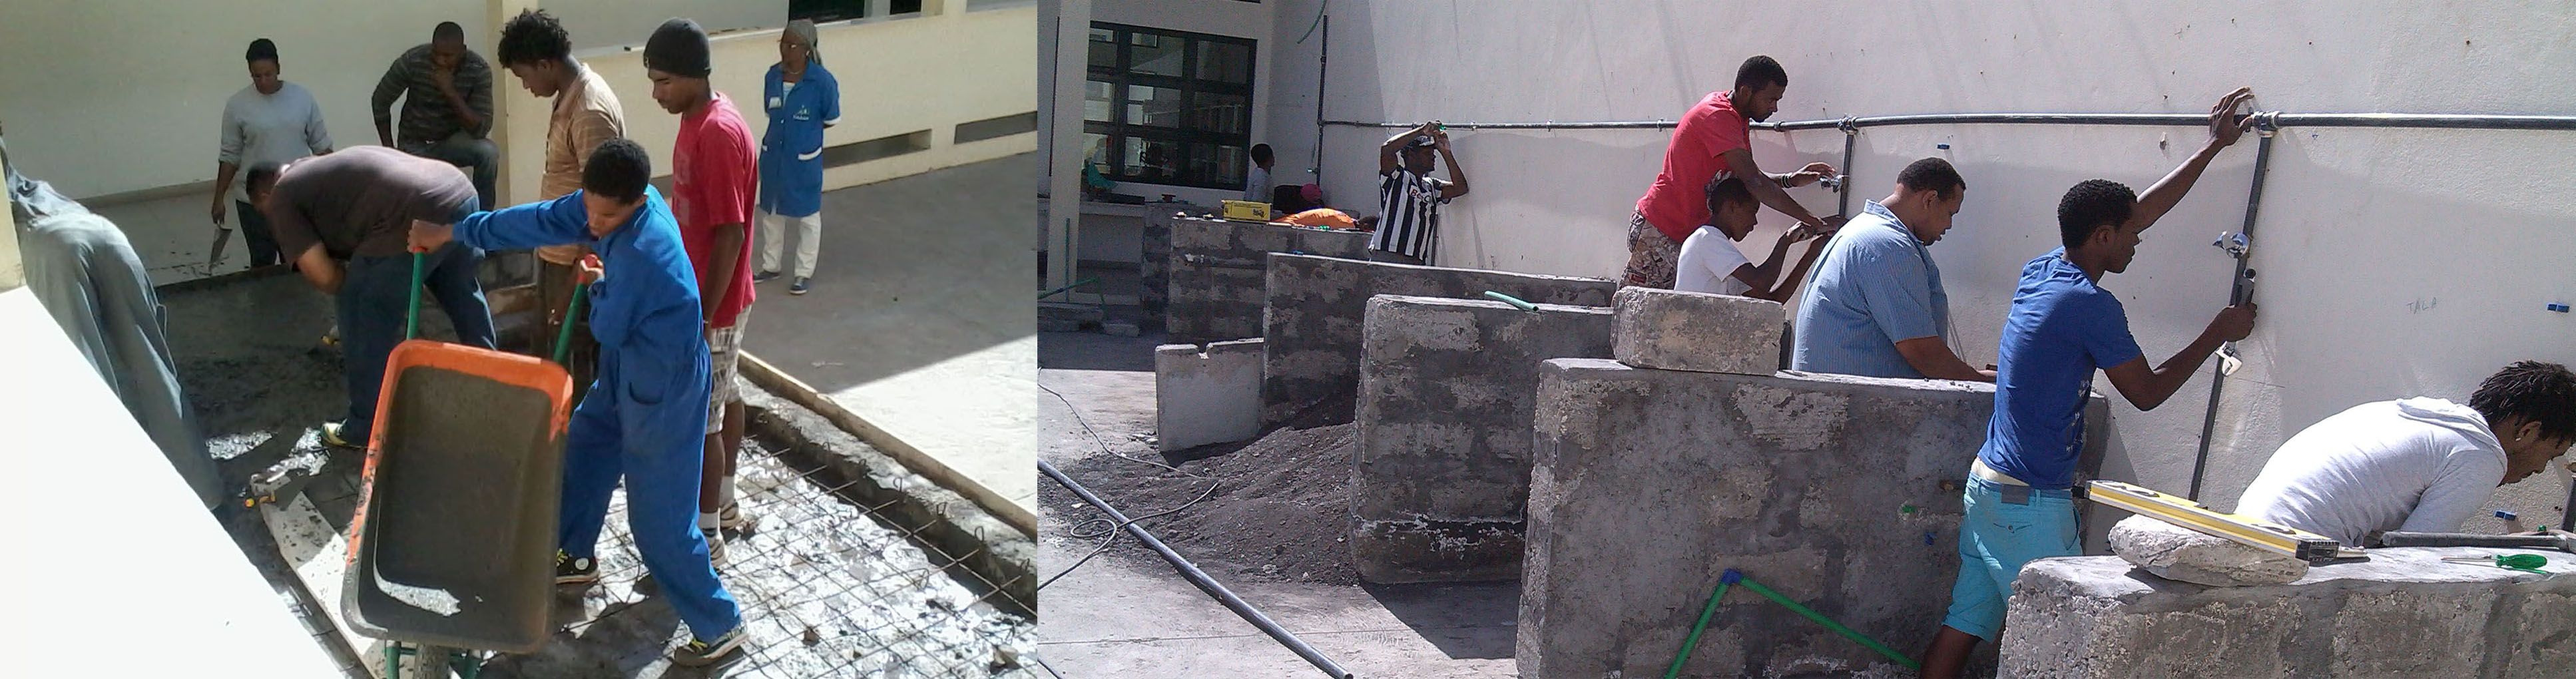 Fotografie degli studenti impegnati in lavori di idraulica ed edilizia